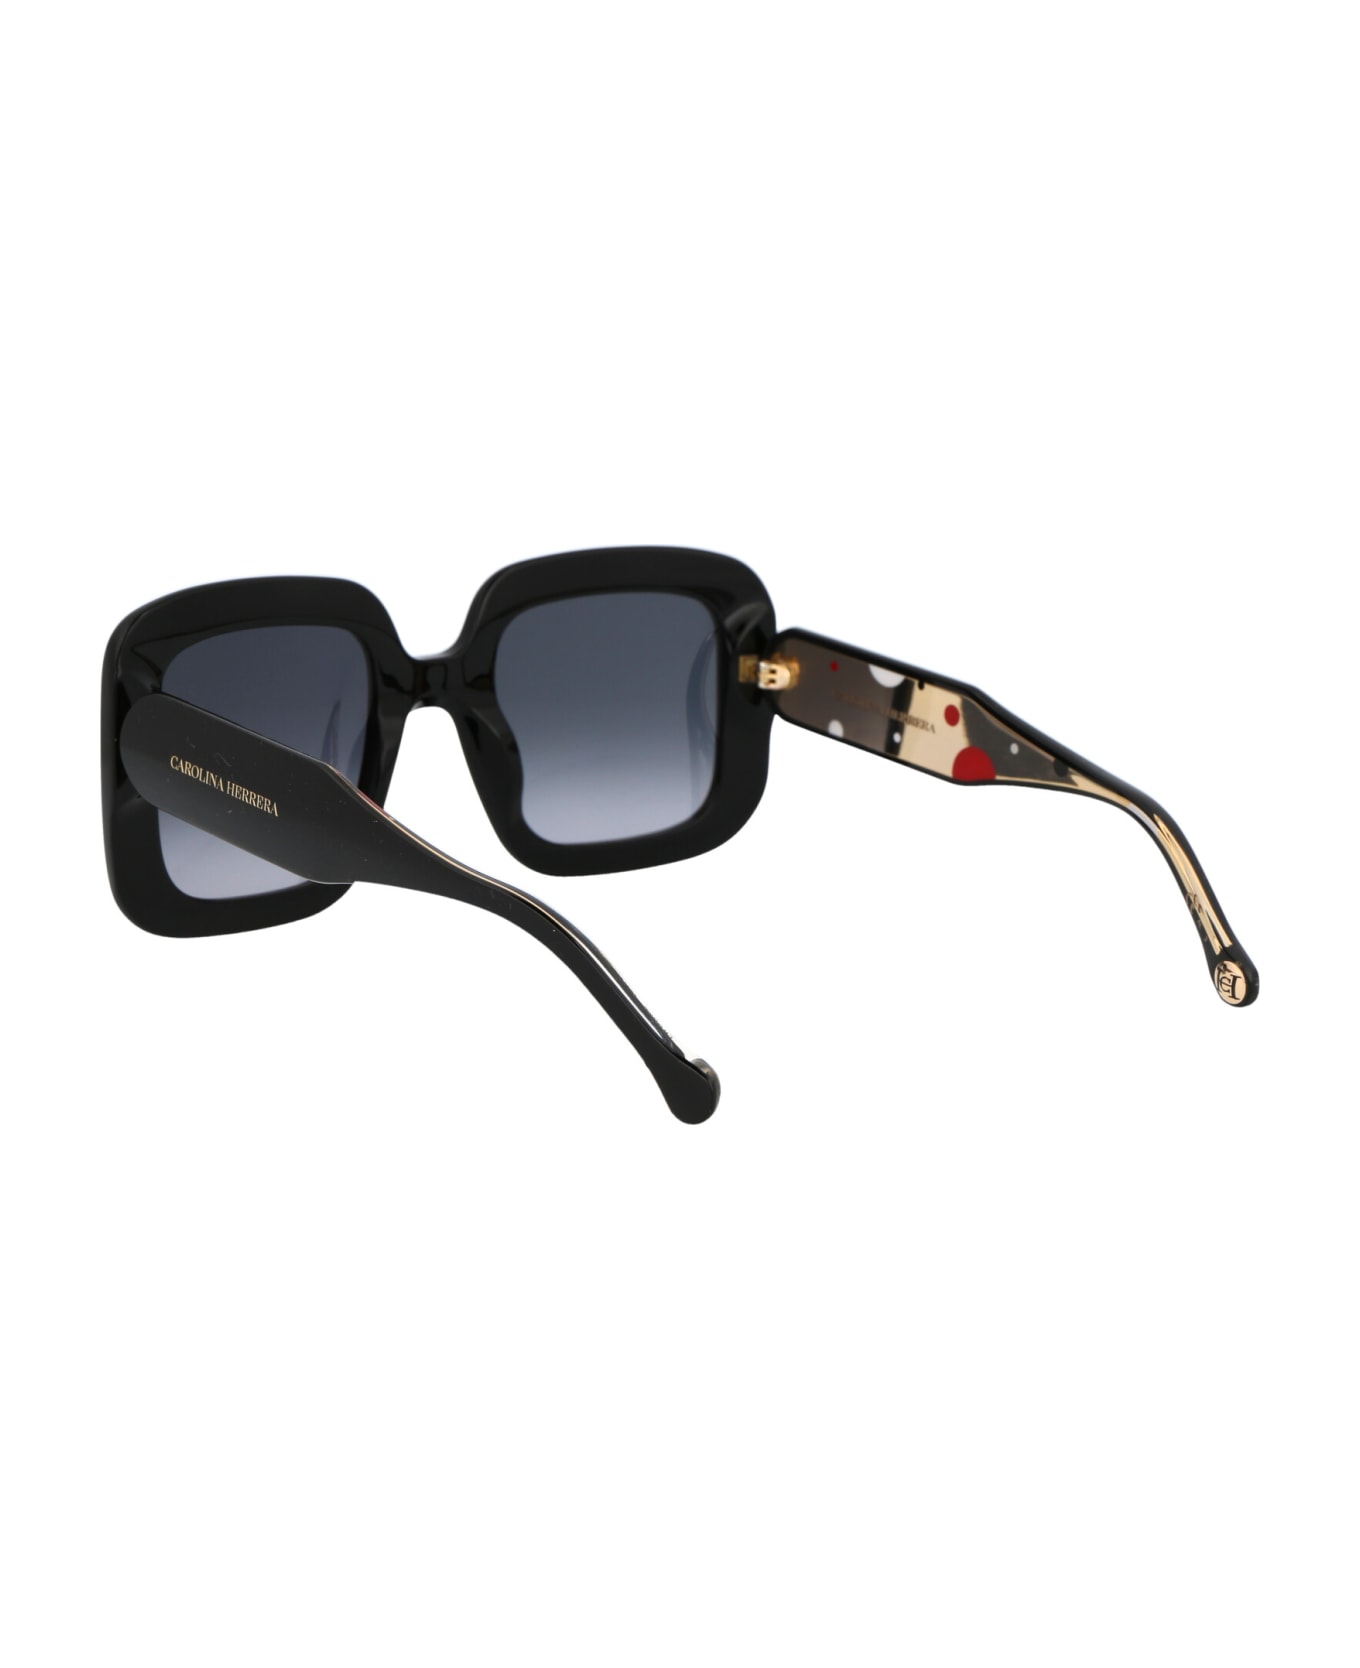 Carolina Herrera Ch 0010/s Sunglasses - 8079O BLACK